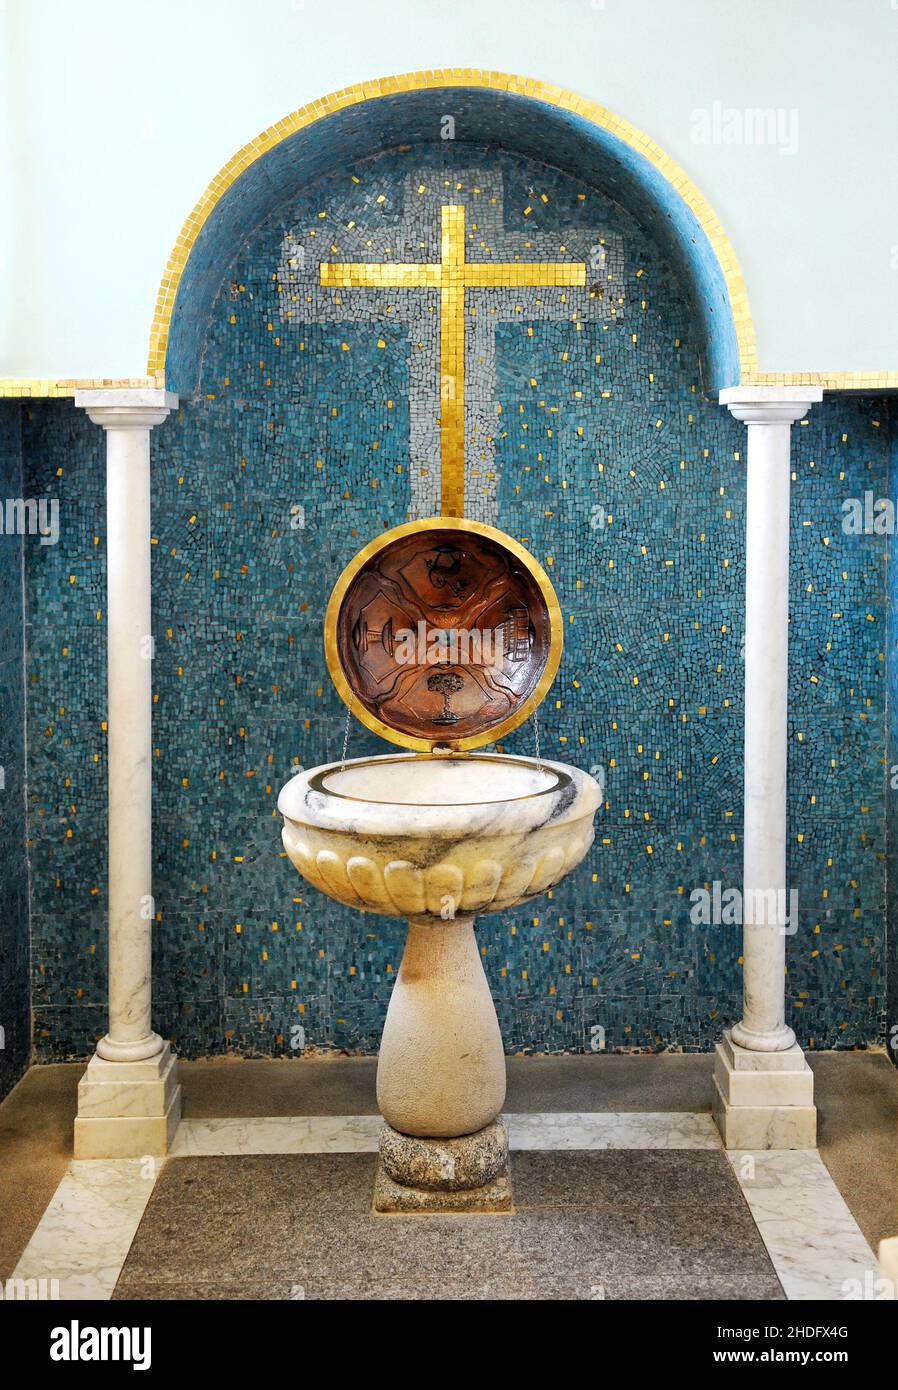 catholic, baptismal font, catholics Stock Photo